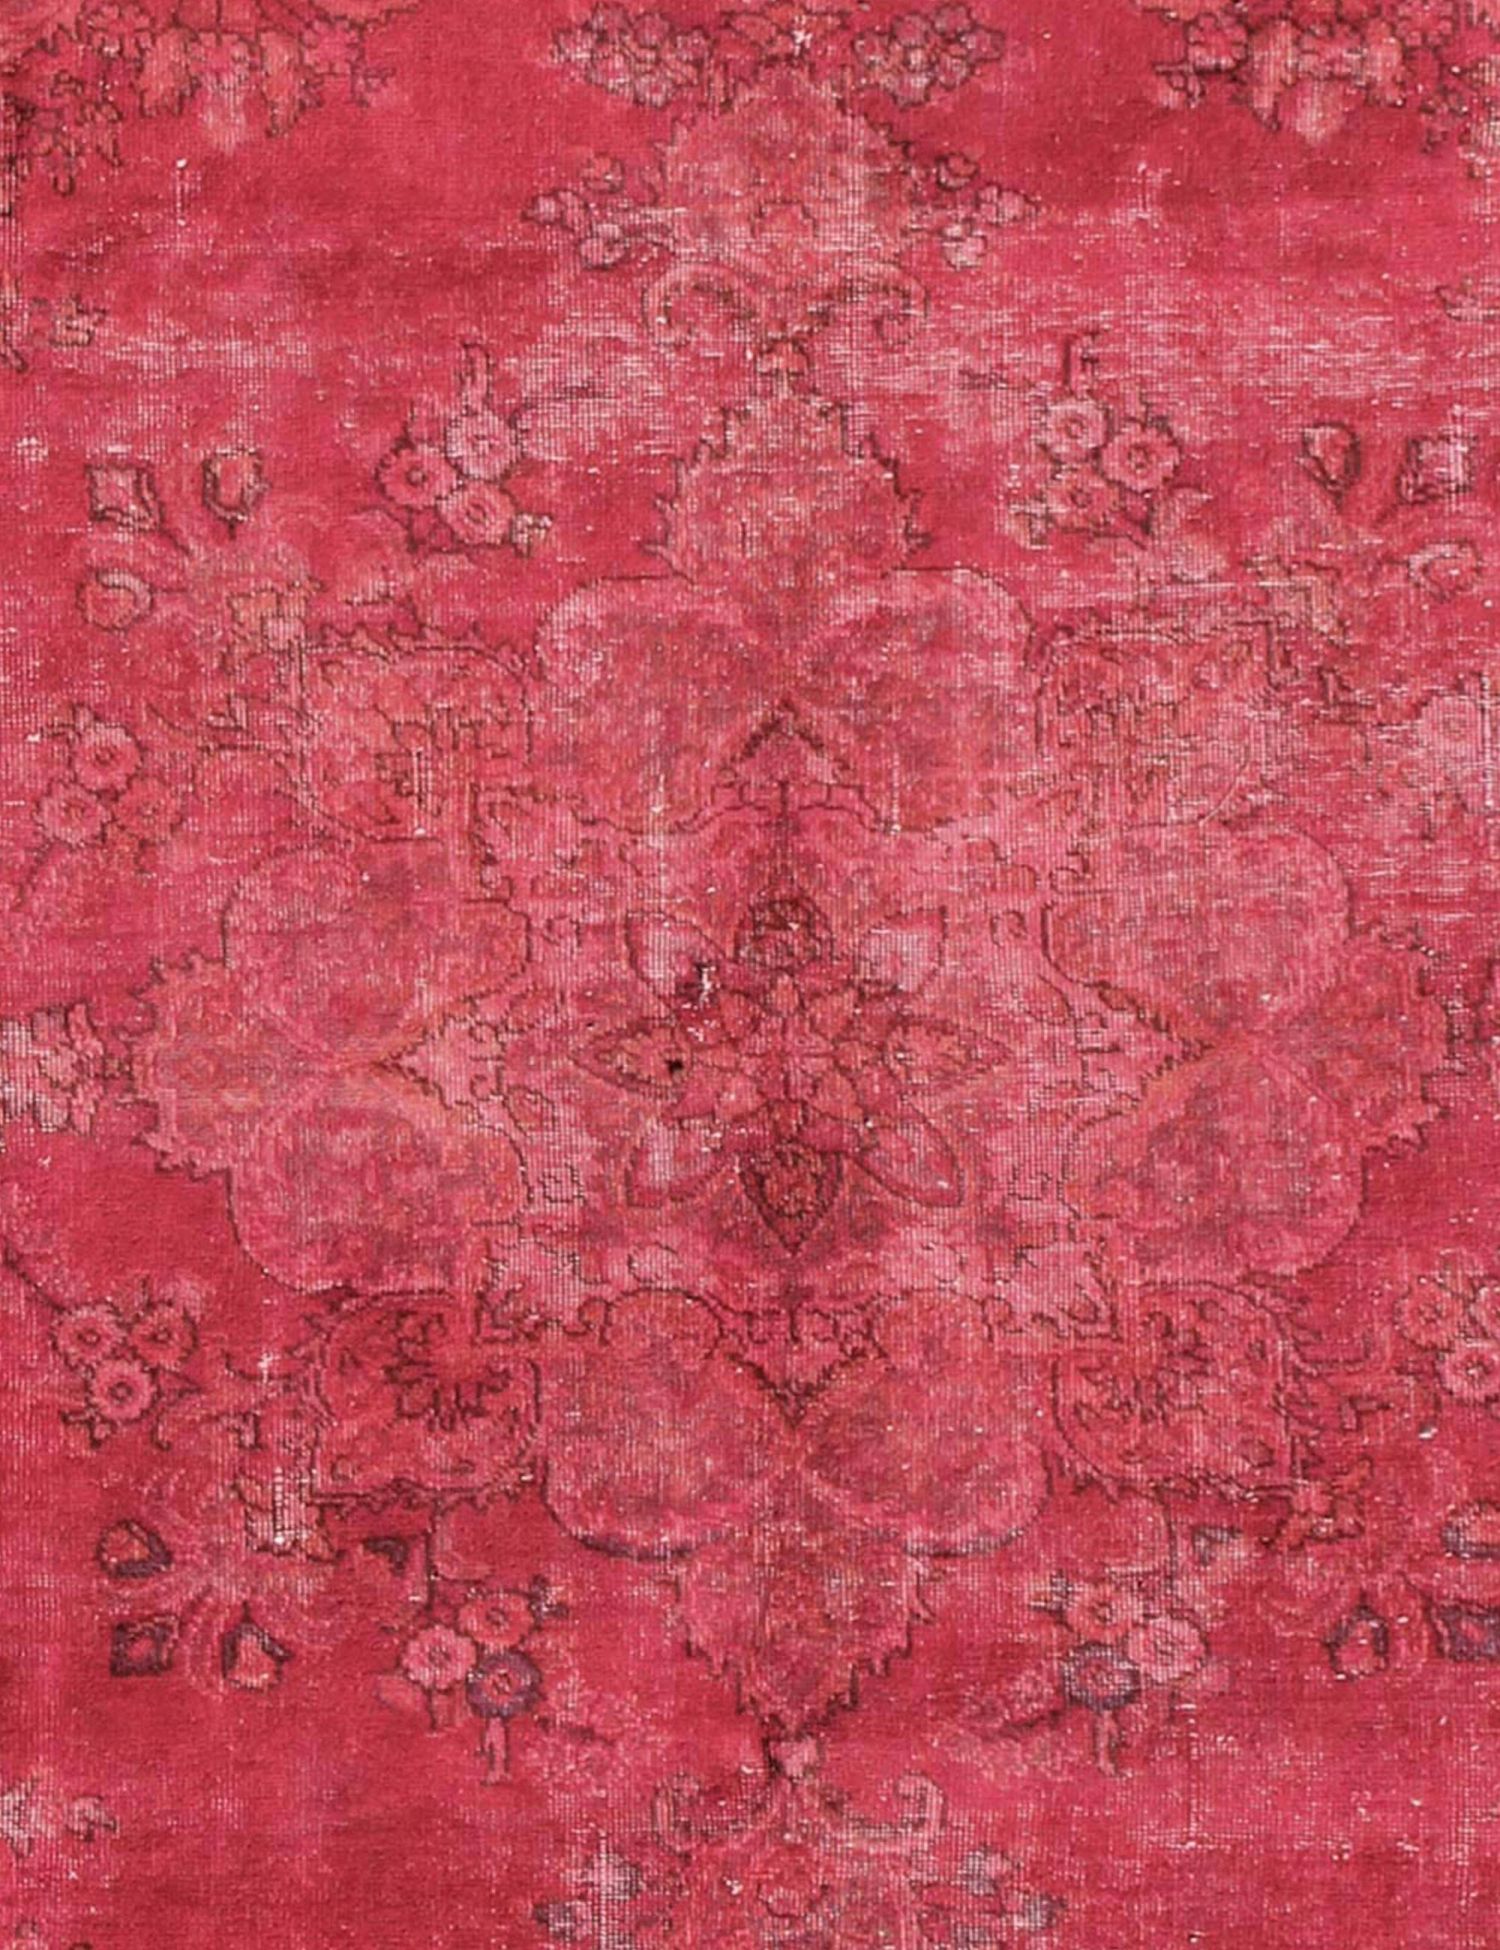 Persischer Vintage Teppich  rot <br/>260 x 182 cm